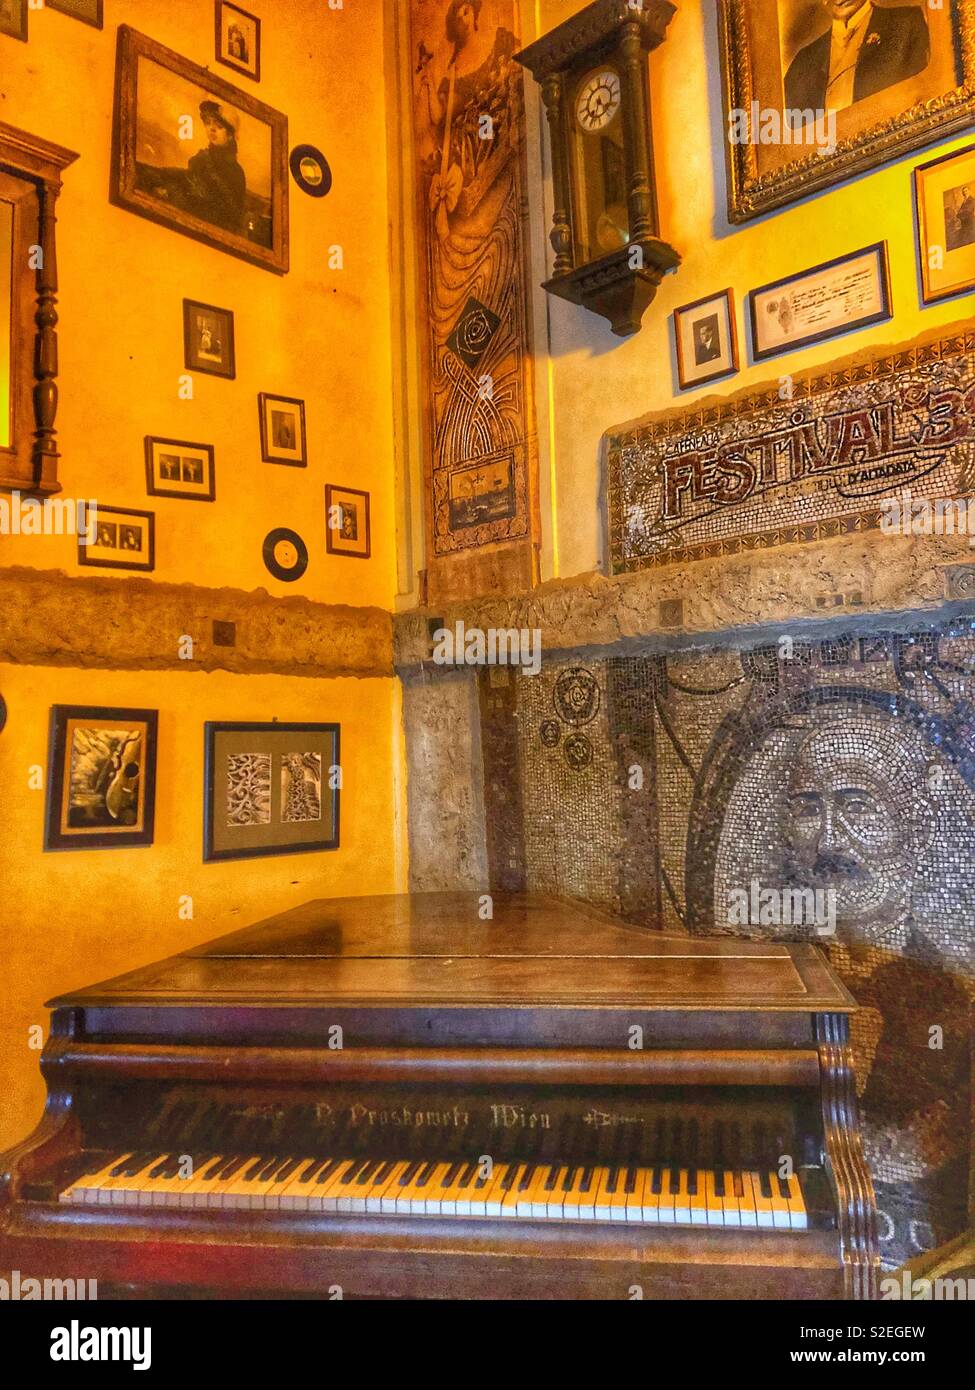 Piano in the corner. Stock Photo